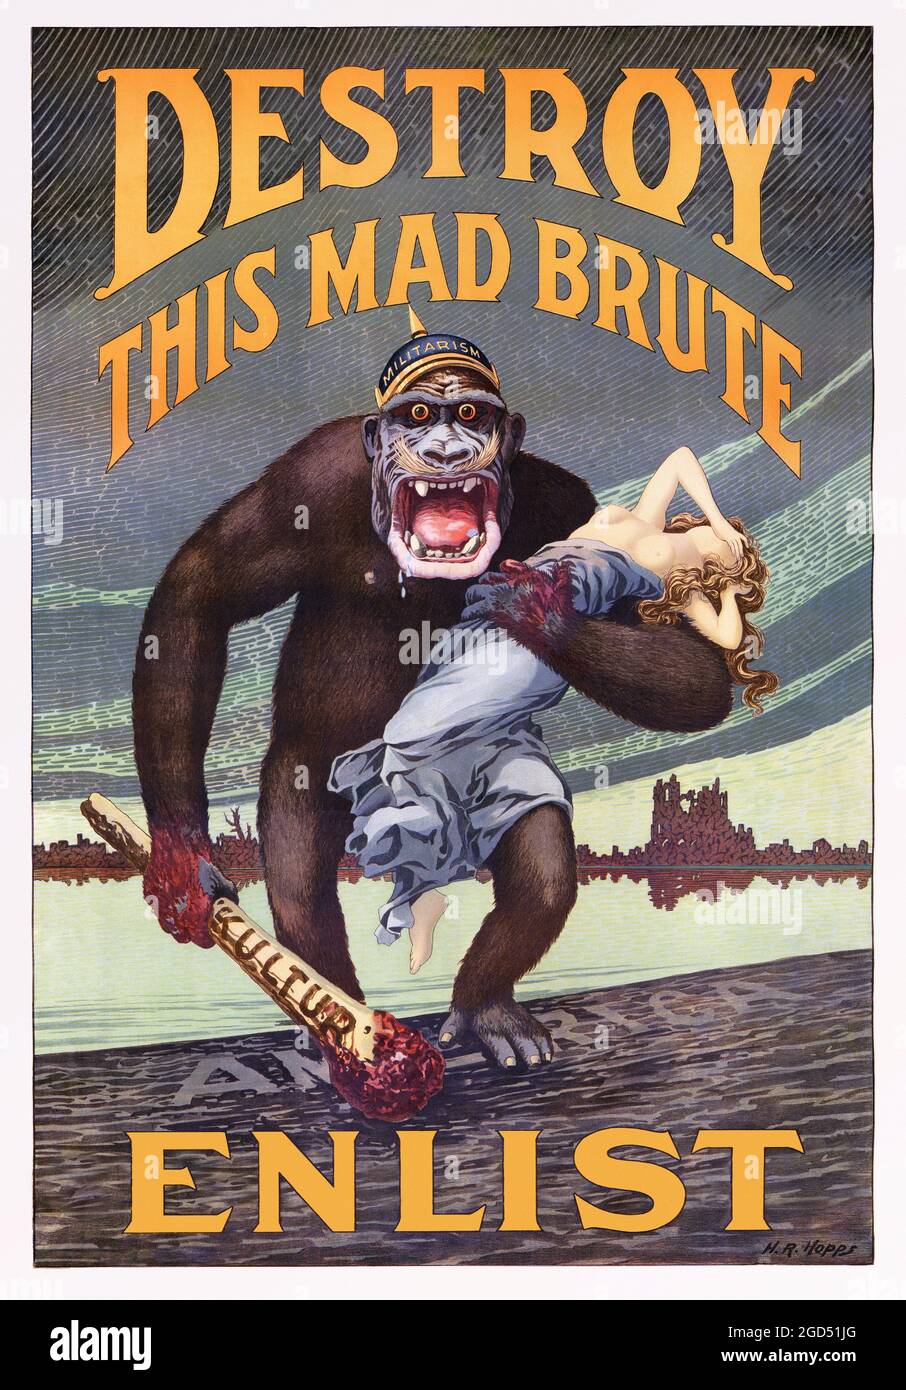 Zerstöre dieses verrückte Brute-Enlist - U.S. Army - Old and vintage Propaganda / Recruitment Poster. 1917. Retuschierte Version. Stockfoto